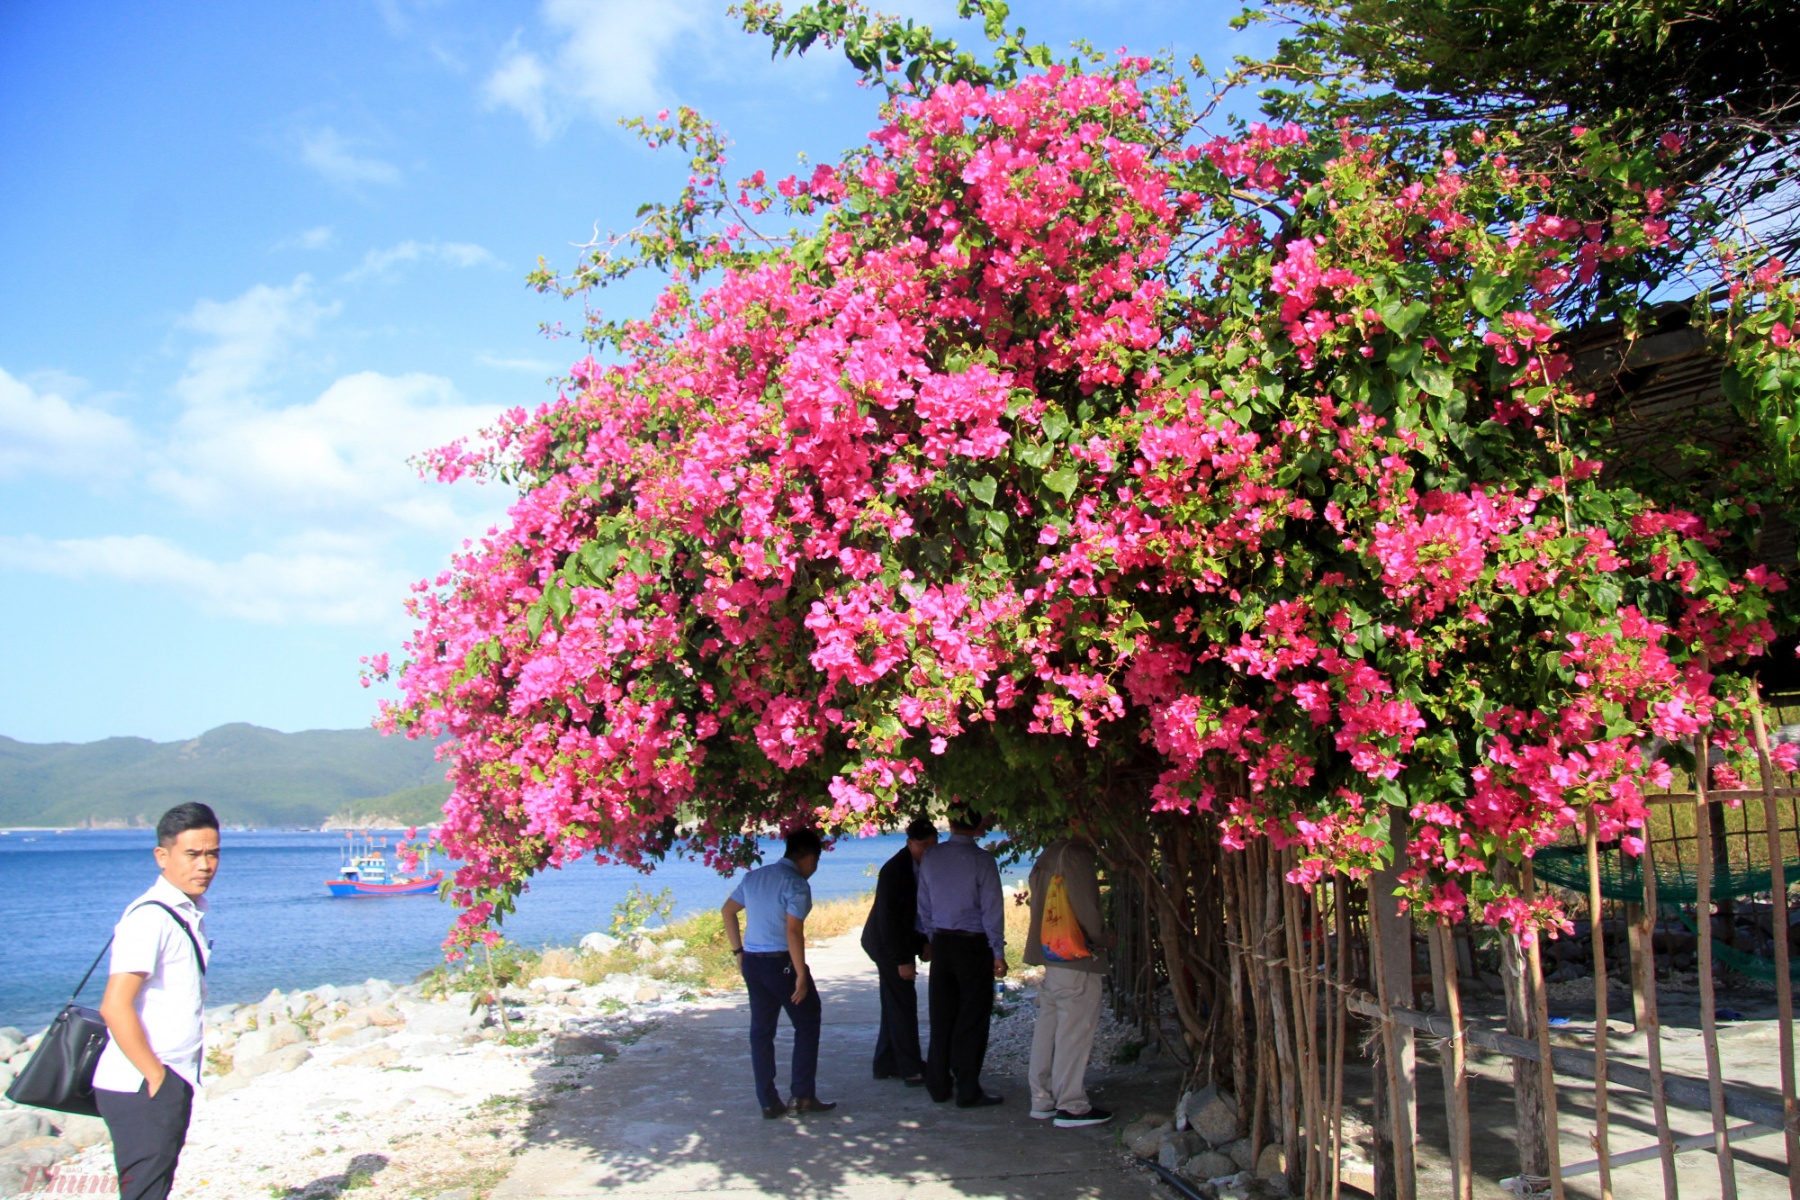 Khám phá cuộc sống của người dân địa phương. Trong ảnh, giàn hoa giấy rực rỡ trước sân nhà một người dân trên đảo khiến nhiều du khách thích thú